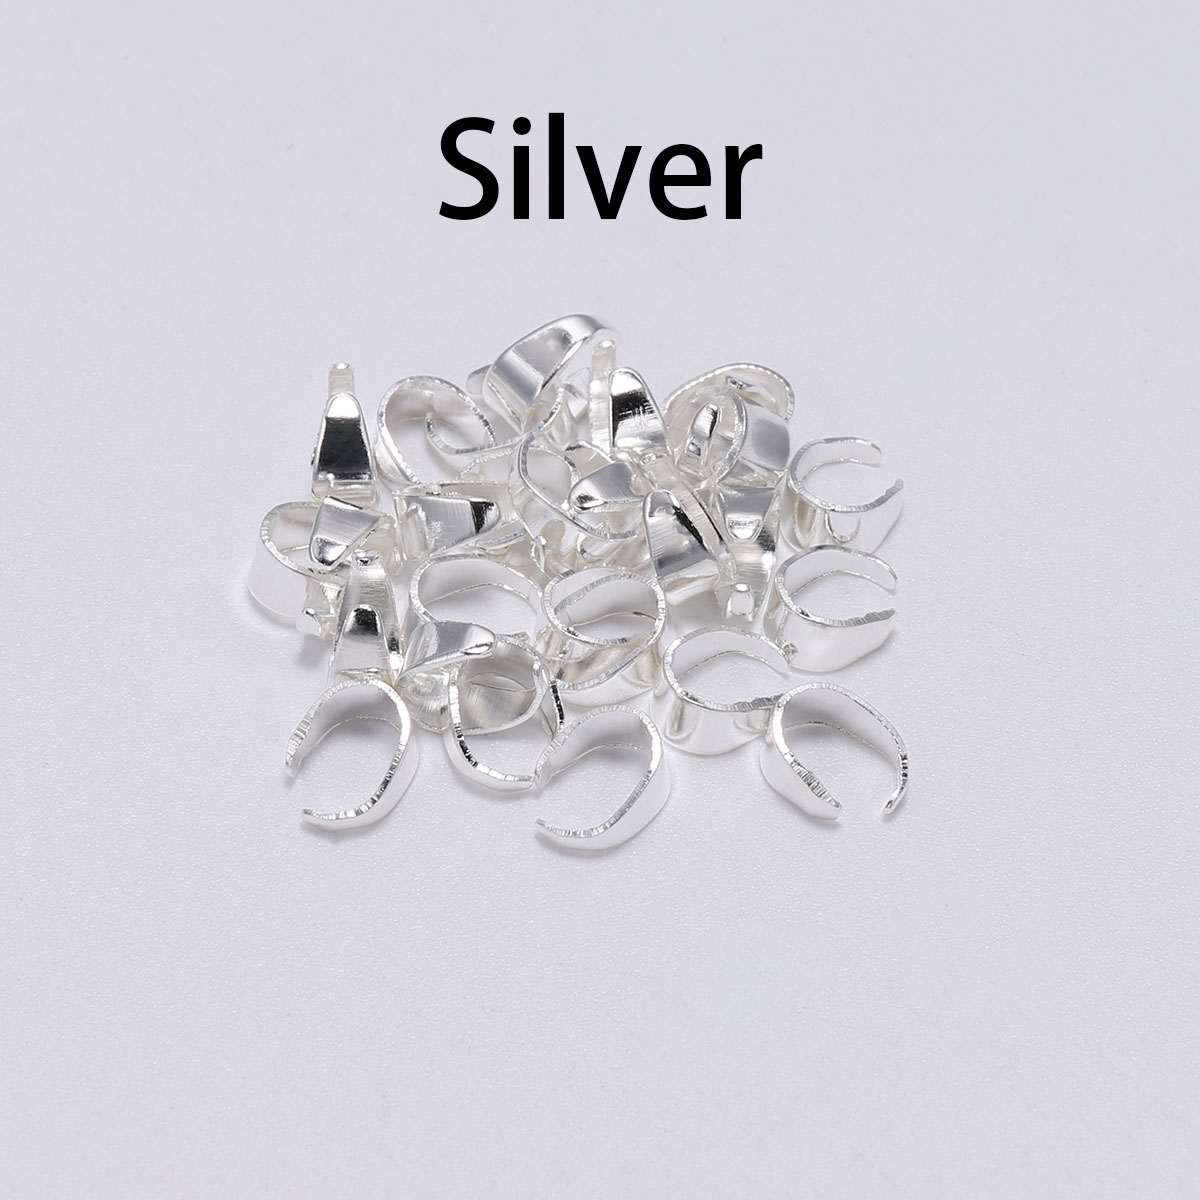 1:silver